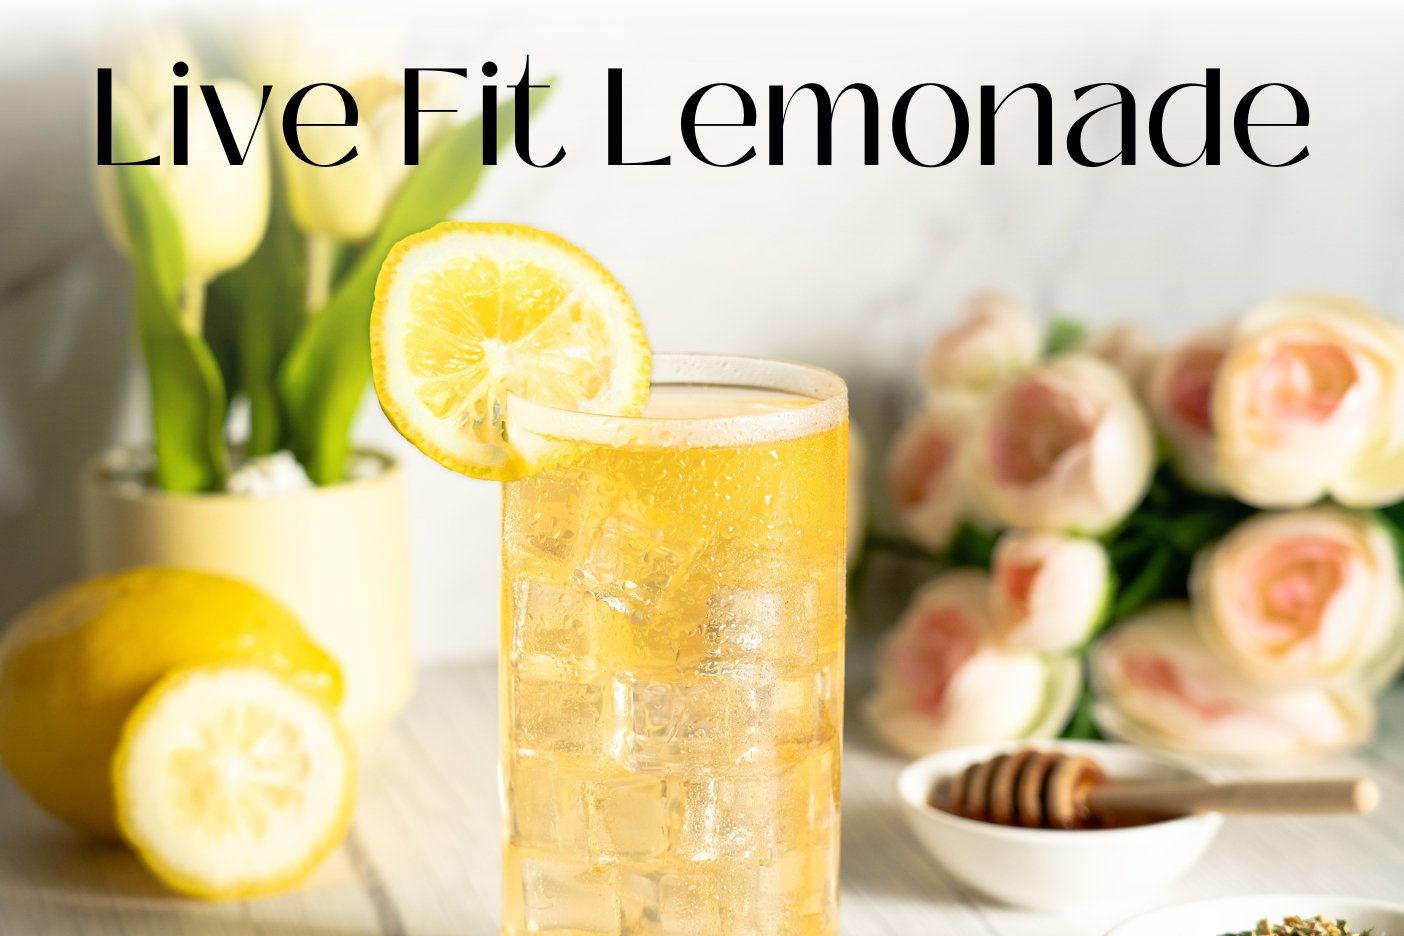 Live Fit Lemonade - Full Leaf Tea Company